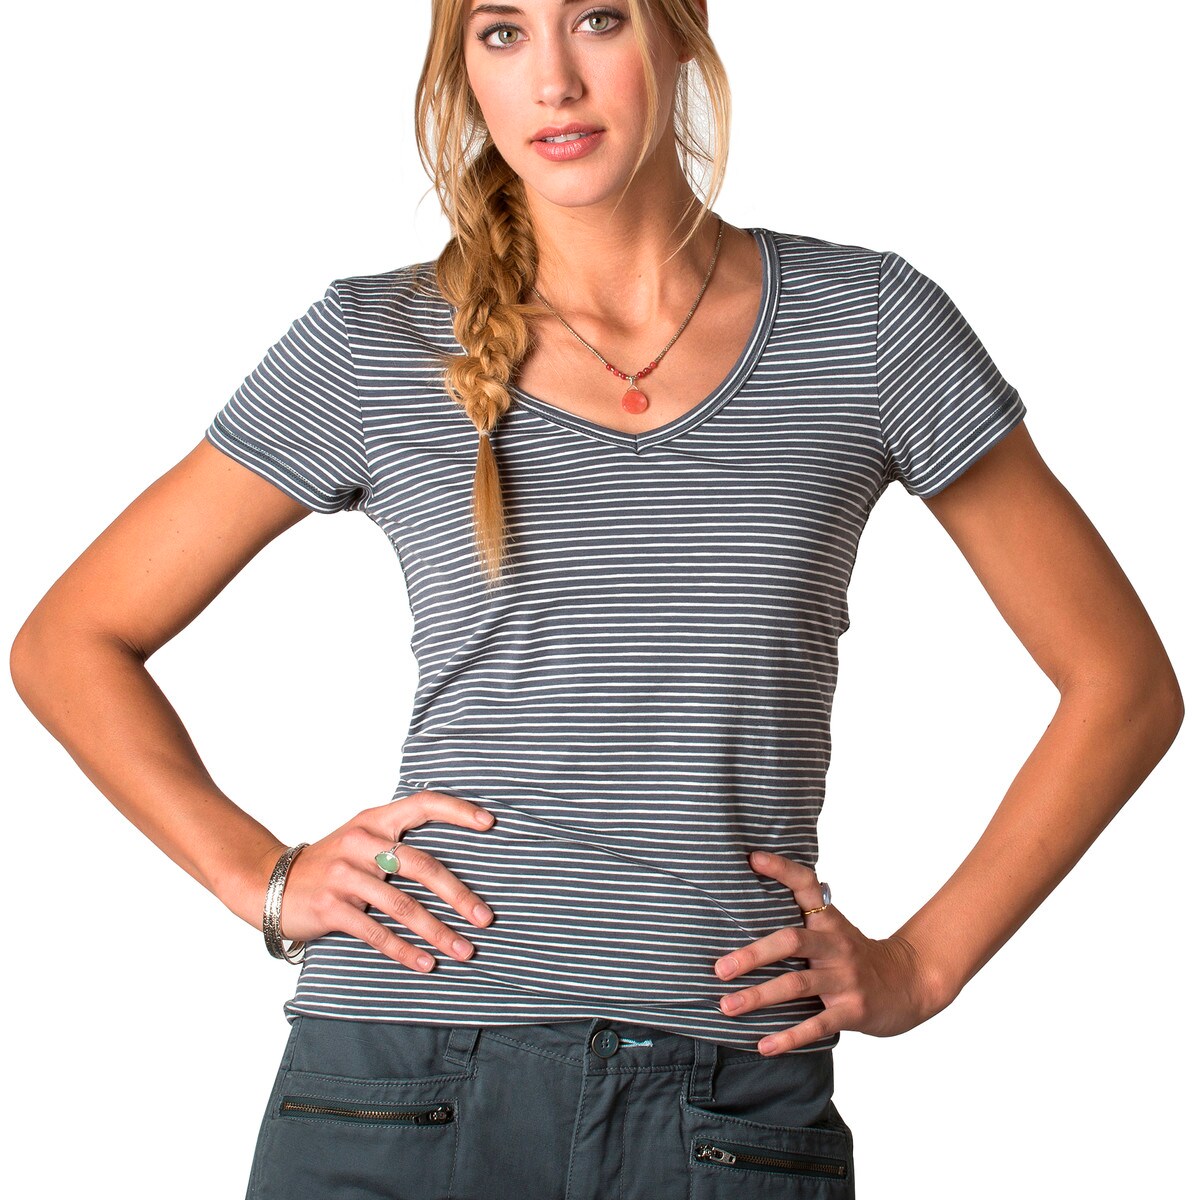 Marley Short-Sleeve T-Shirt - Women